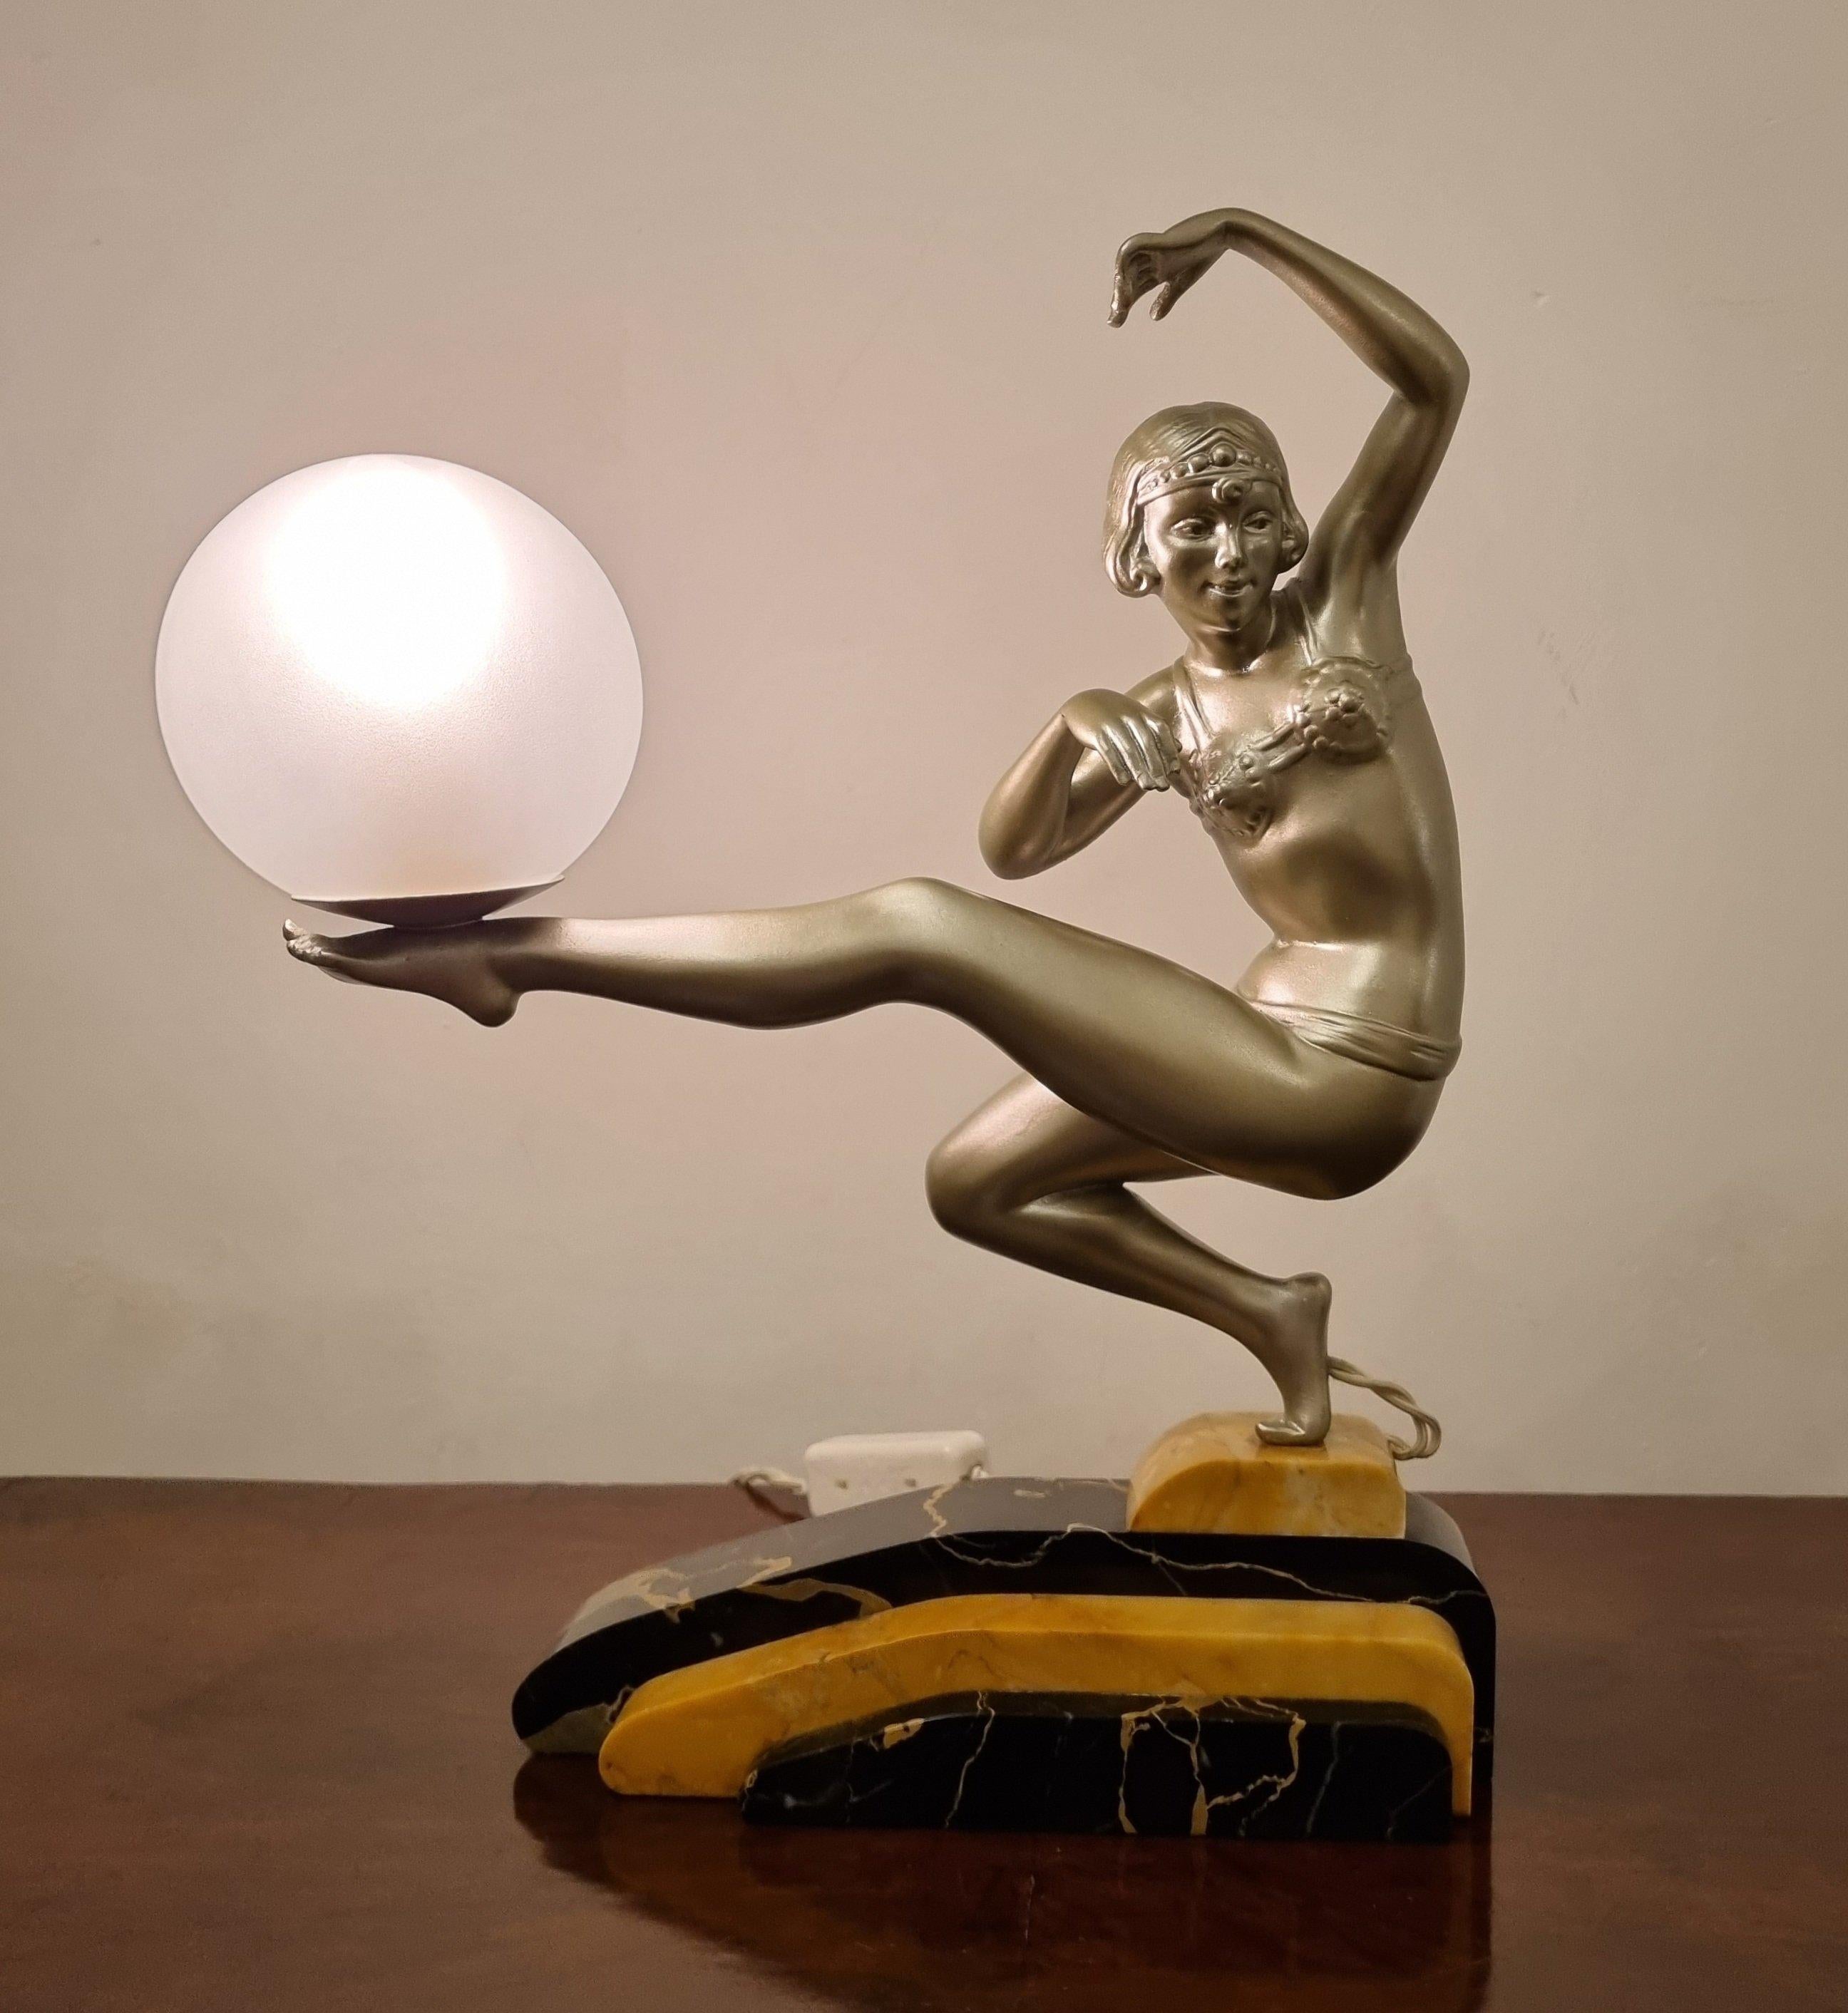 Une lampe / sculpture Art déco extrêmement élégante représentant une danseuse de harem dans un costume original de l'époque Art déco. Réalisé et signé par Georges Van de Voorde, artiste belge très réputé de la période Art déco.
Coulée en terre cuite